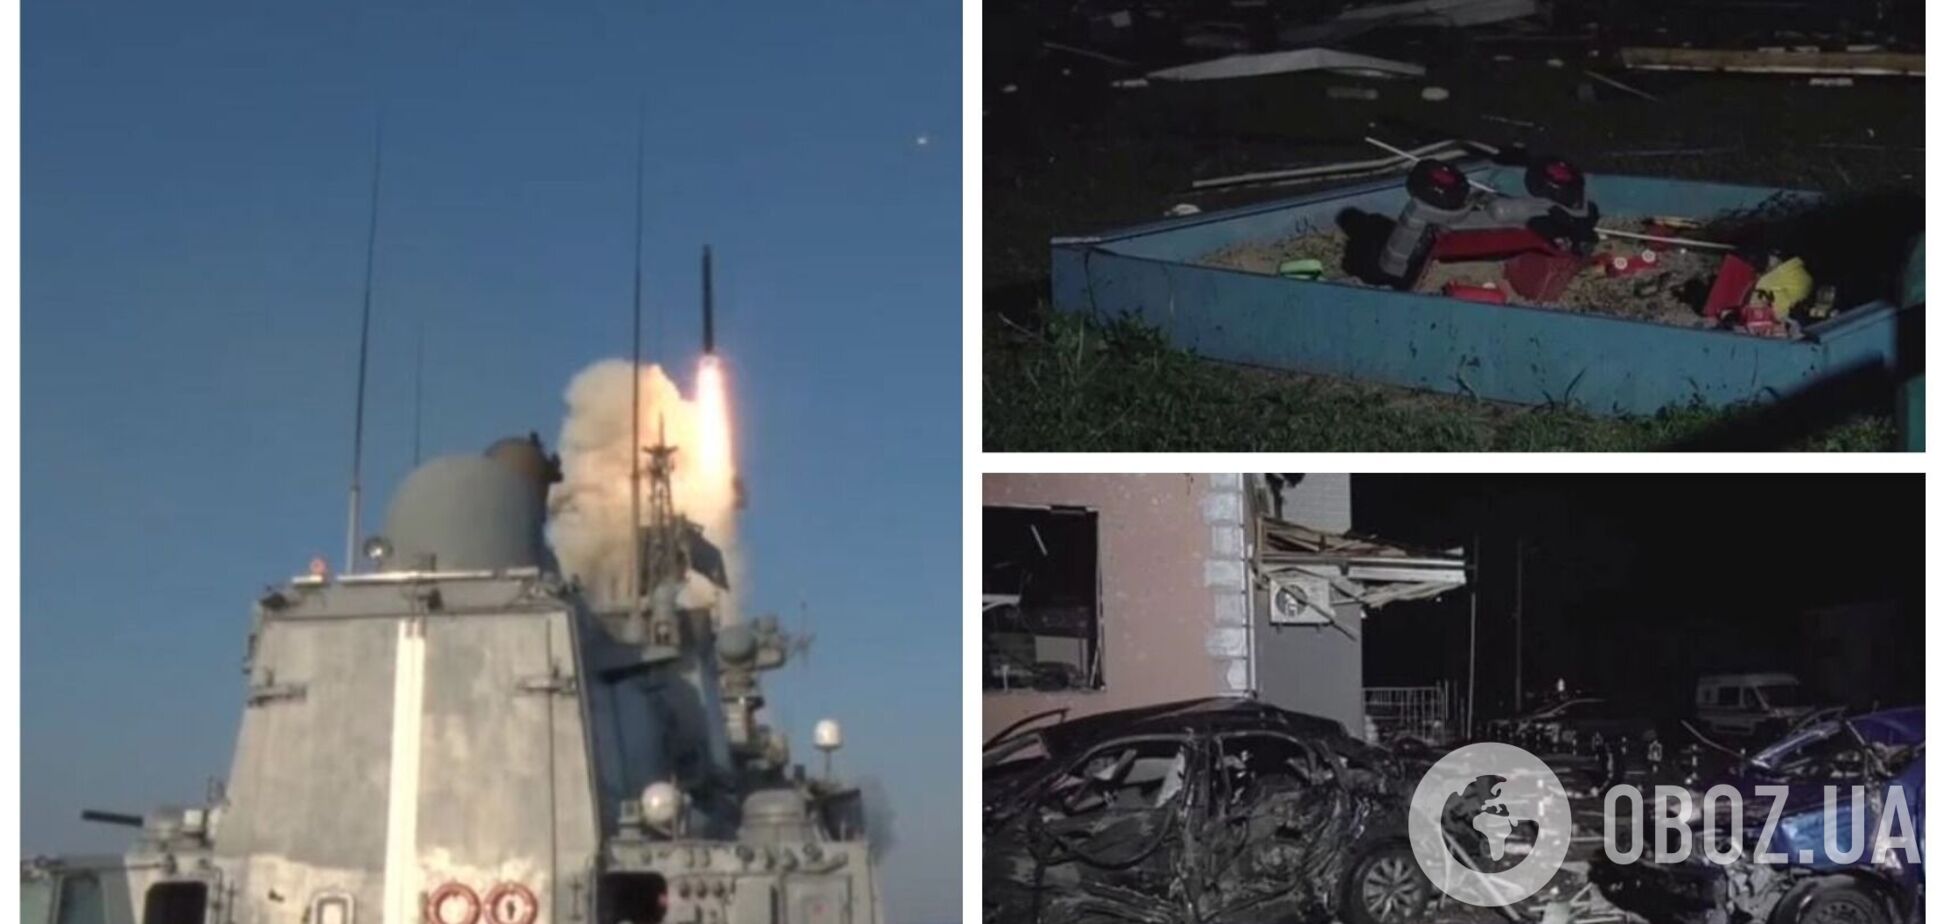 РФ похвасталась запуском ракет, которые могли ударить по Чорткову и ранить более 20 человек. Видео